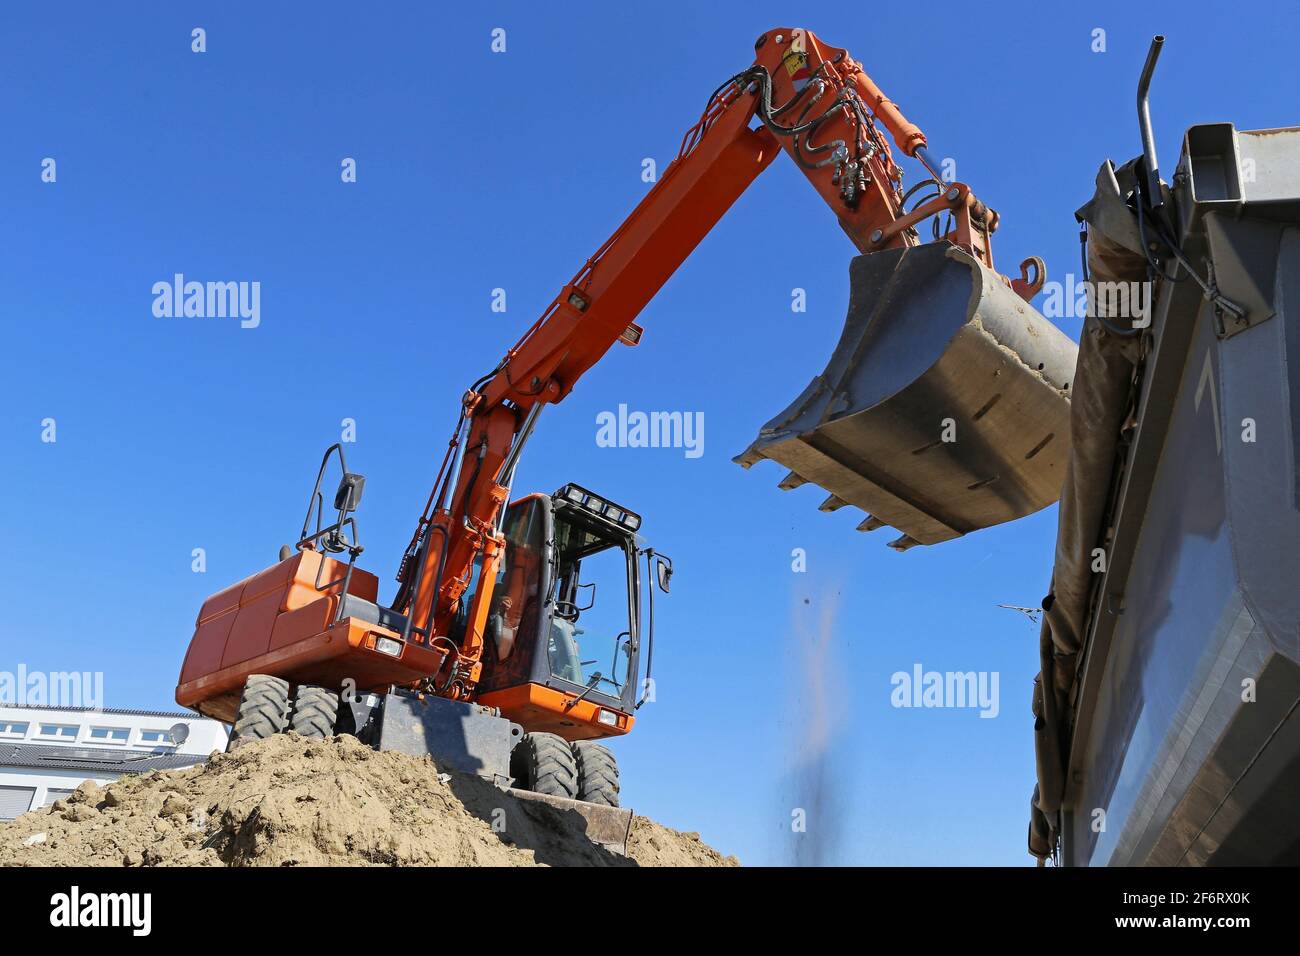 Trabajos de excavación con excavadora en un lugar de construcción. Foto de stock